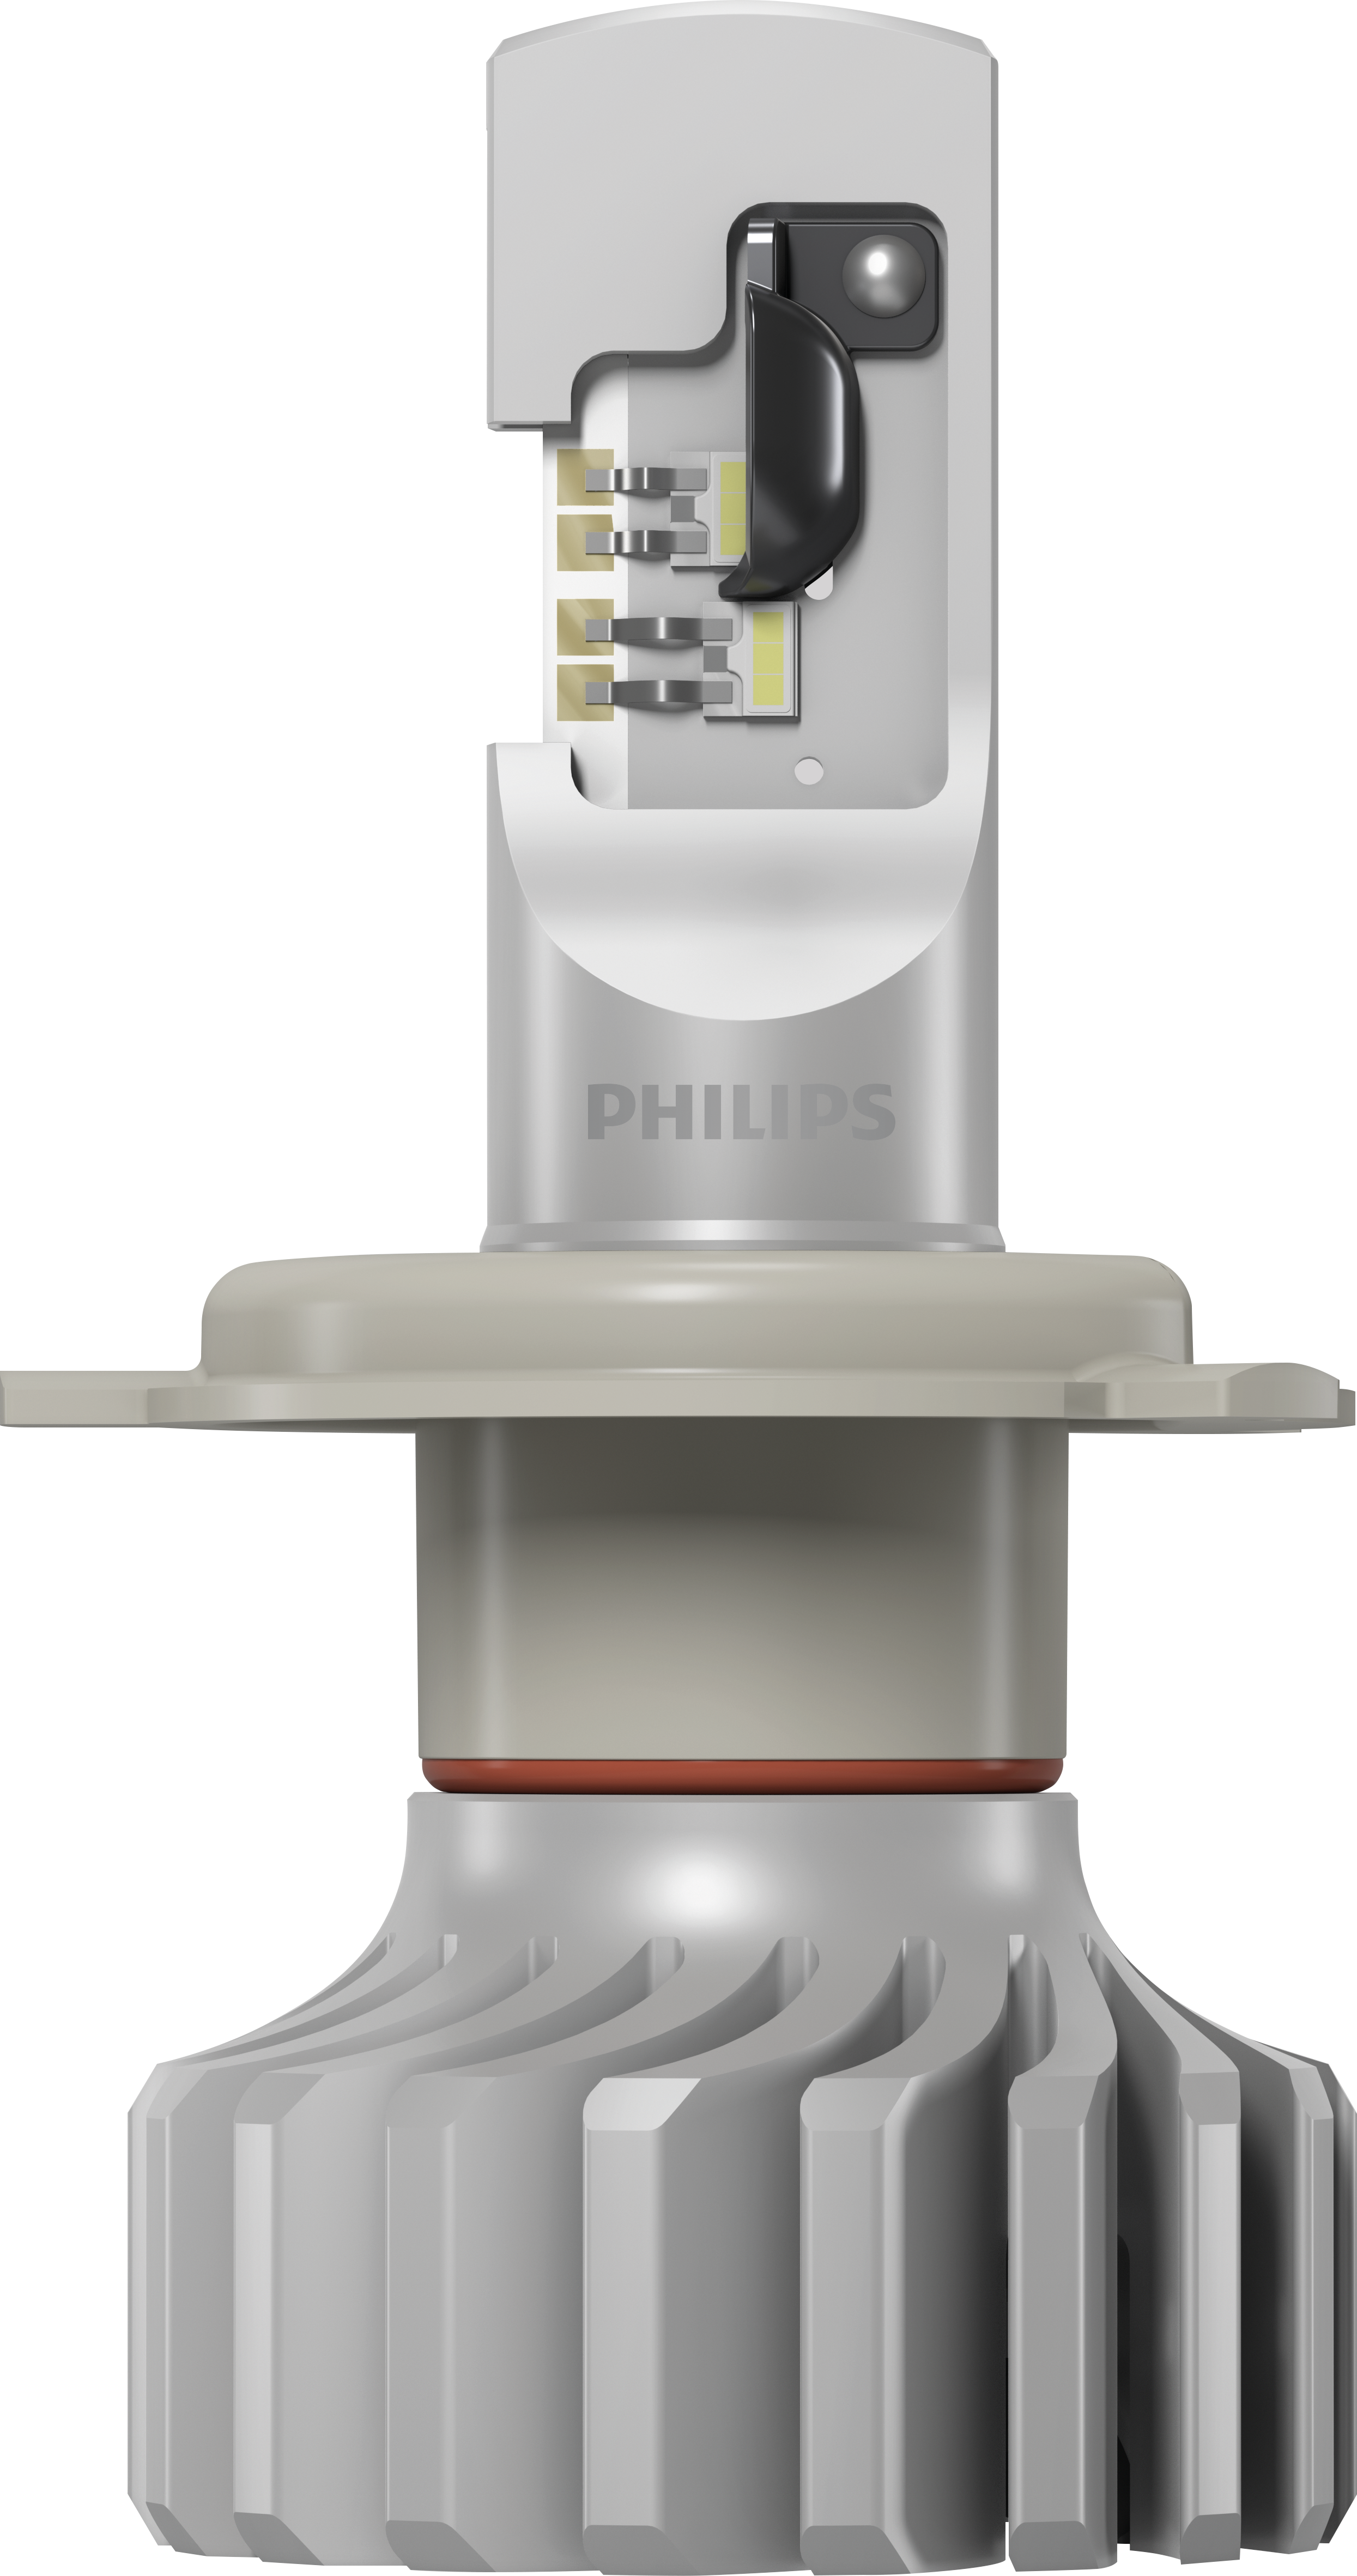 💡 ENDLICH Philips bringt erste legale H4 LED Lampe Ultinon PRO